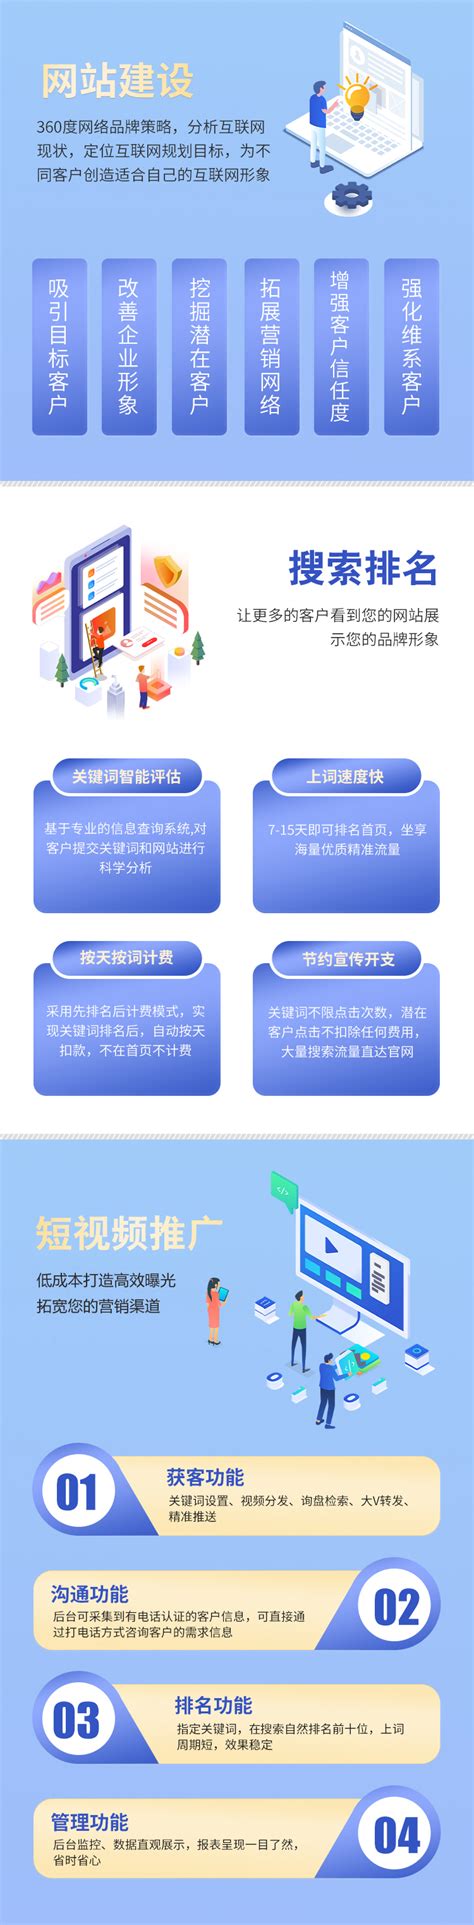 重庆网站建设管理模式